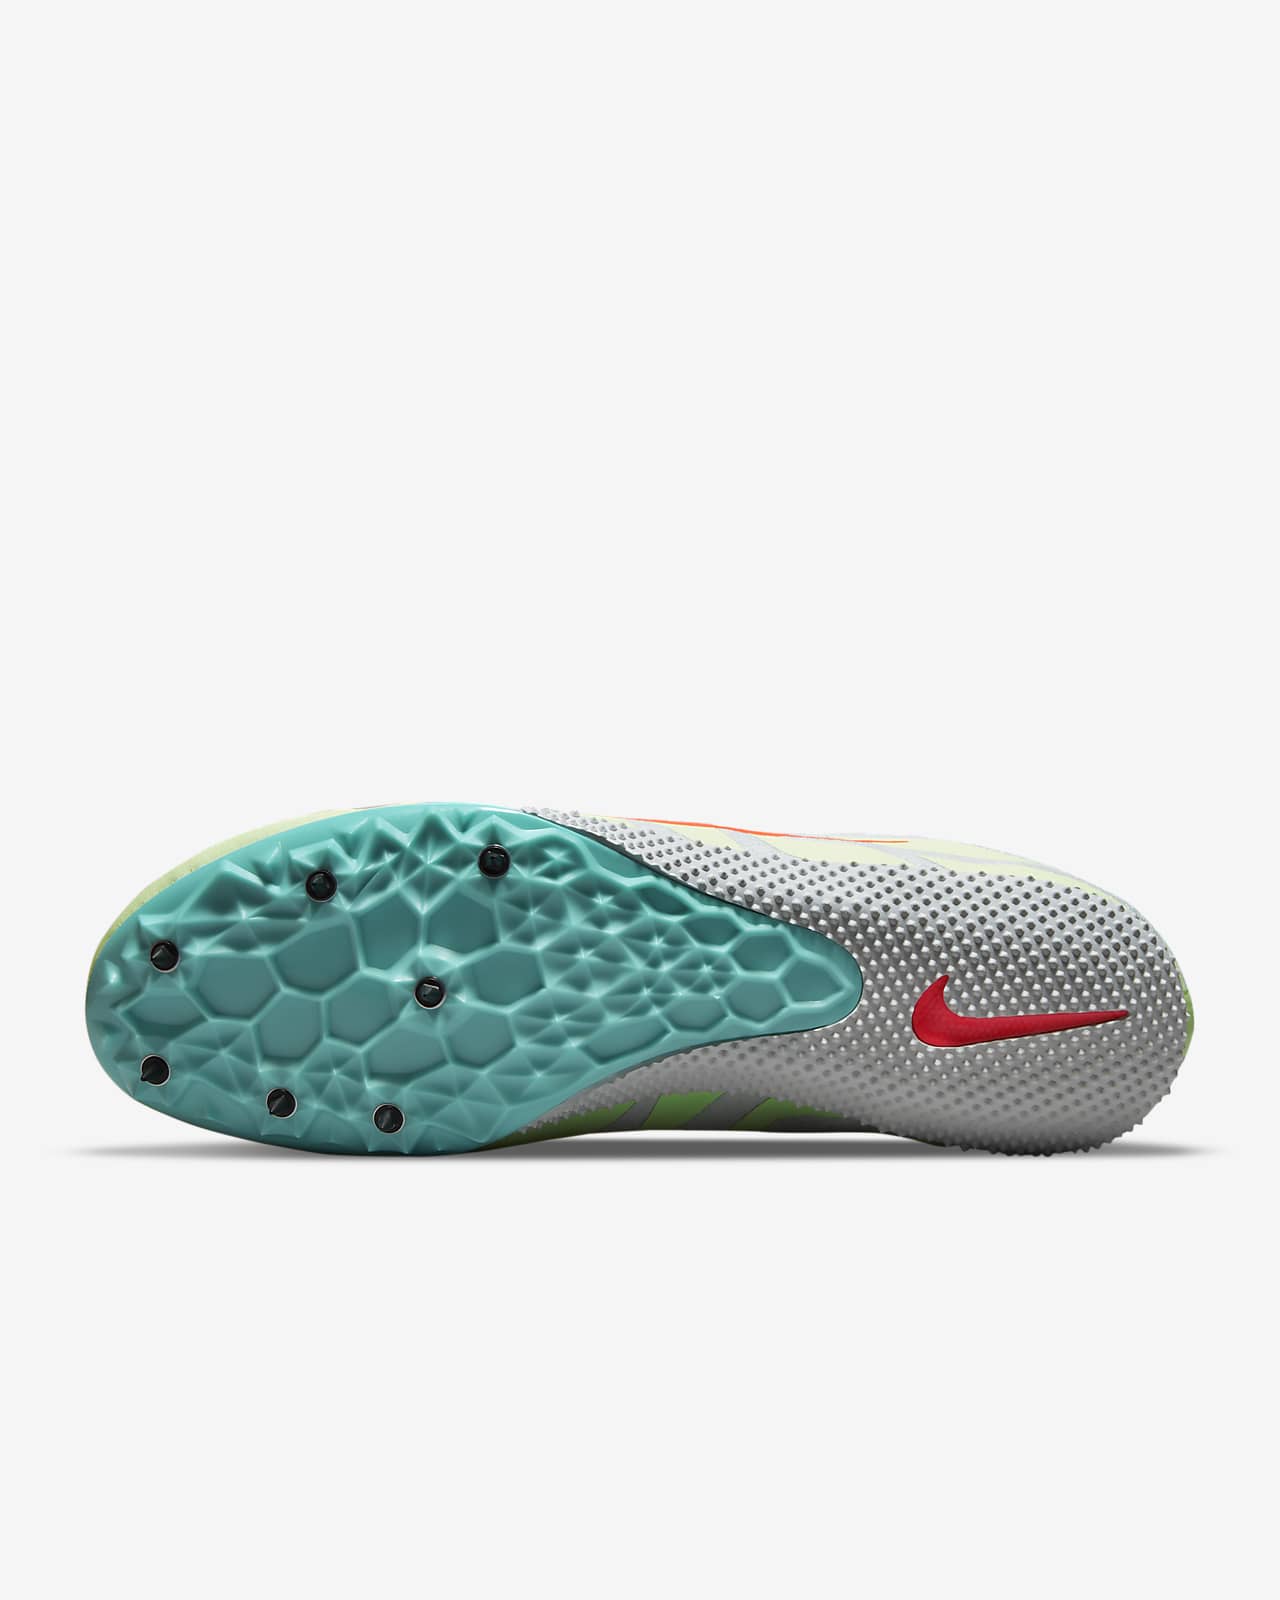 Calzado de clavos carreras rápidas de pista y campo Nike Zoom Rival S 9. Nike.com